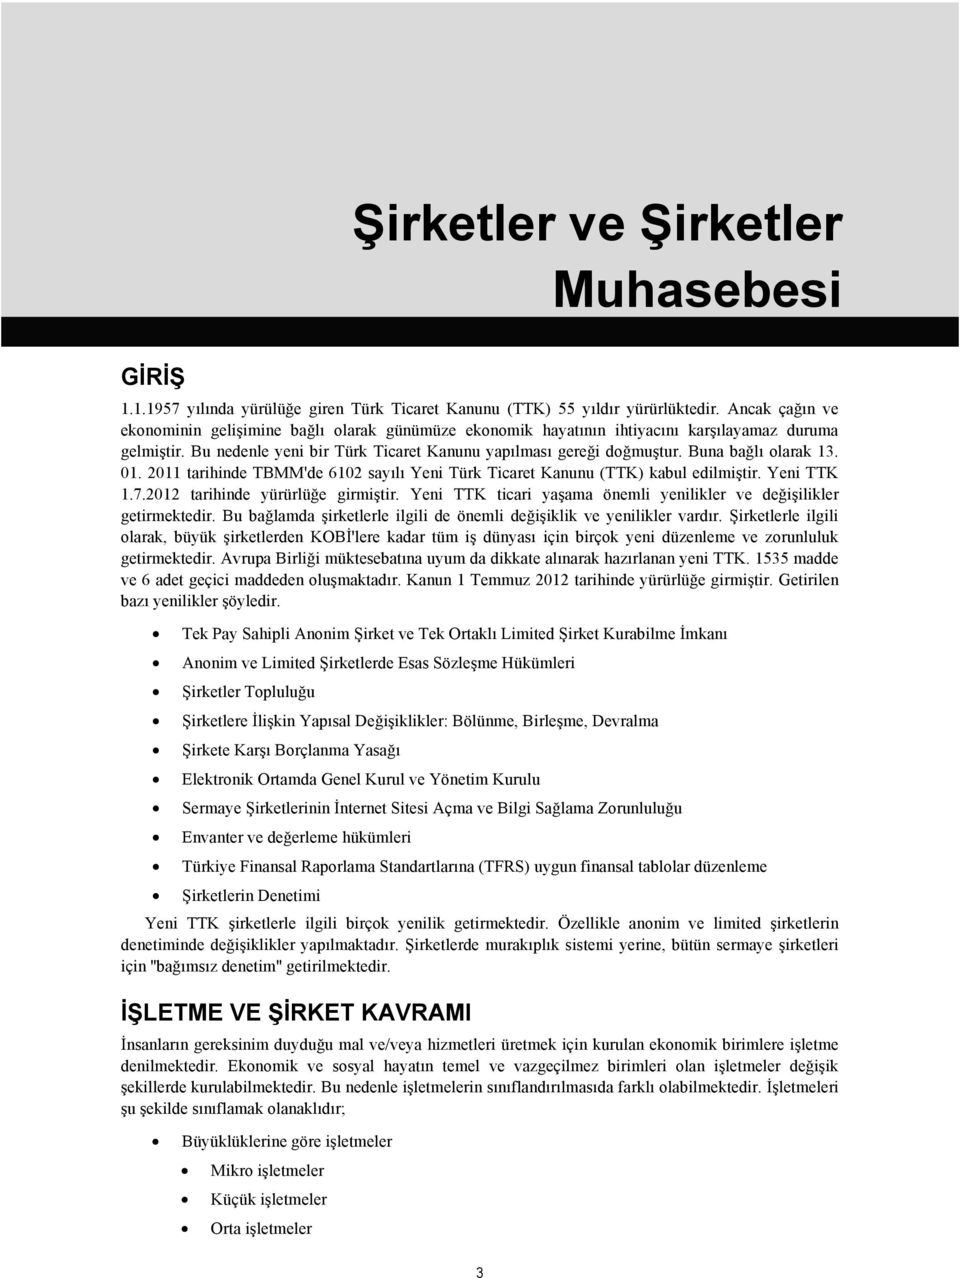 Buna bağlı olarak 13. 01. 2011 tarihinde TBMM'de 6102 sayılı Yeni Türk Ticaret Kanunu (TTK) kabul edilmiştir. Yeni TTK 1.7.2012 tarihinde yürürlüğe girmiştir.